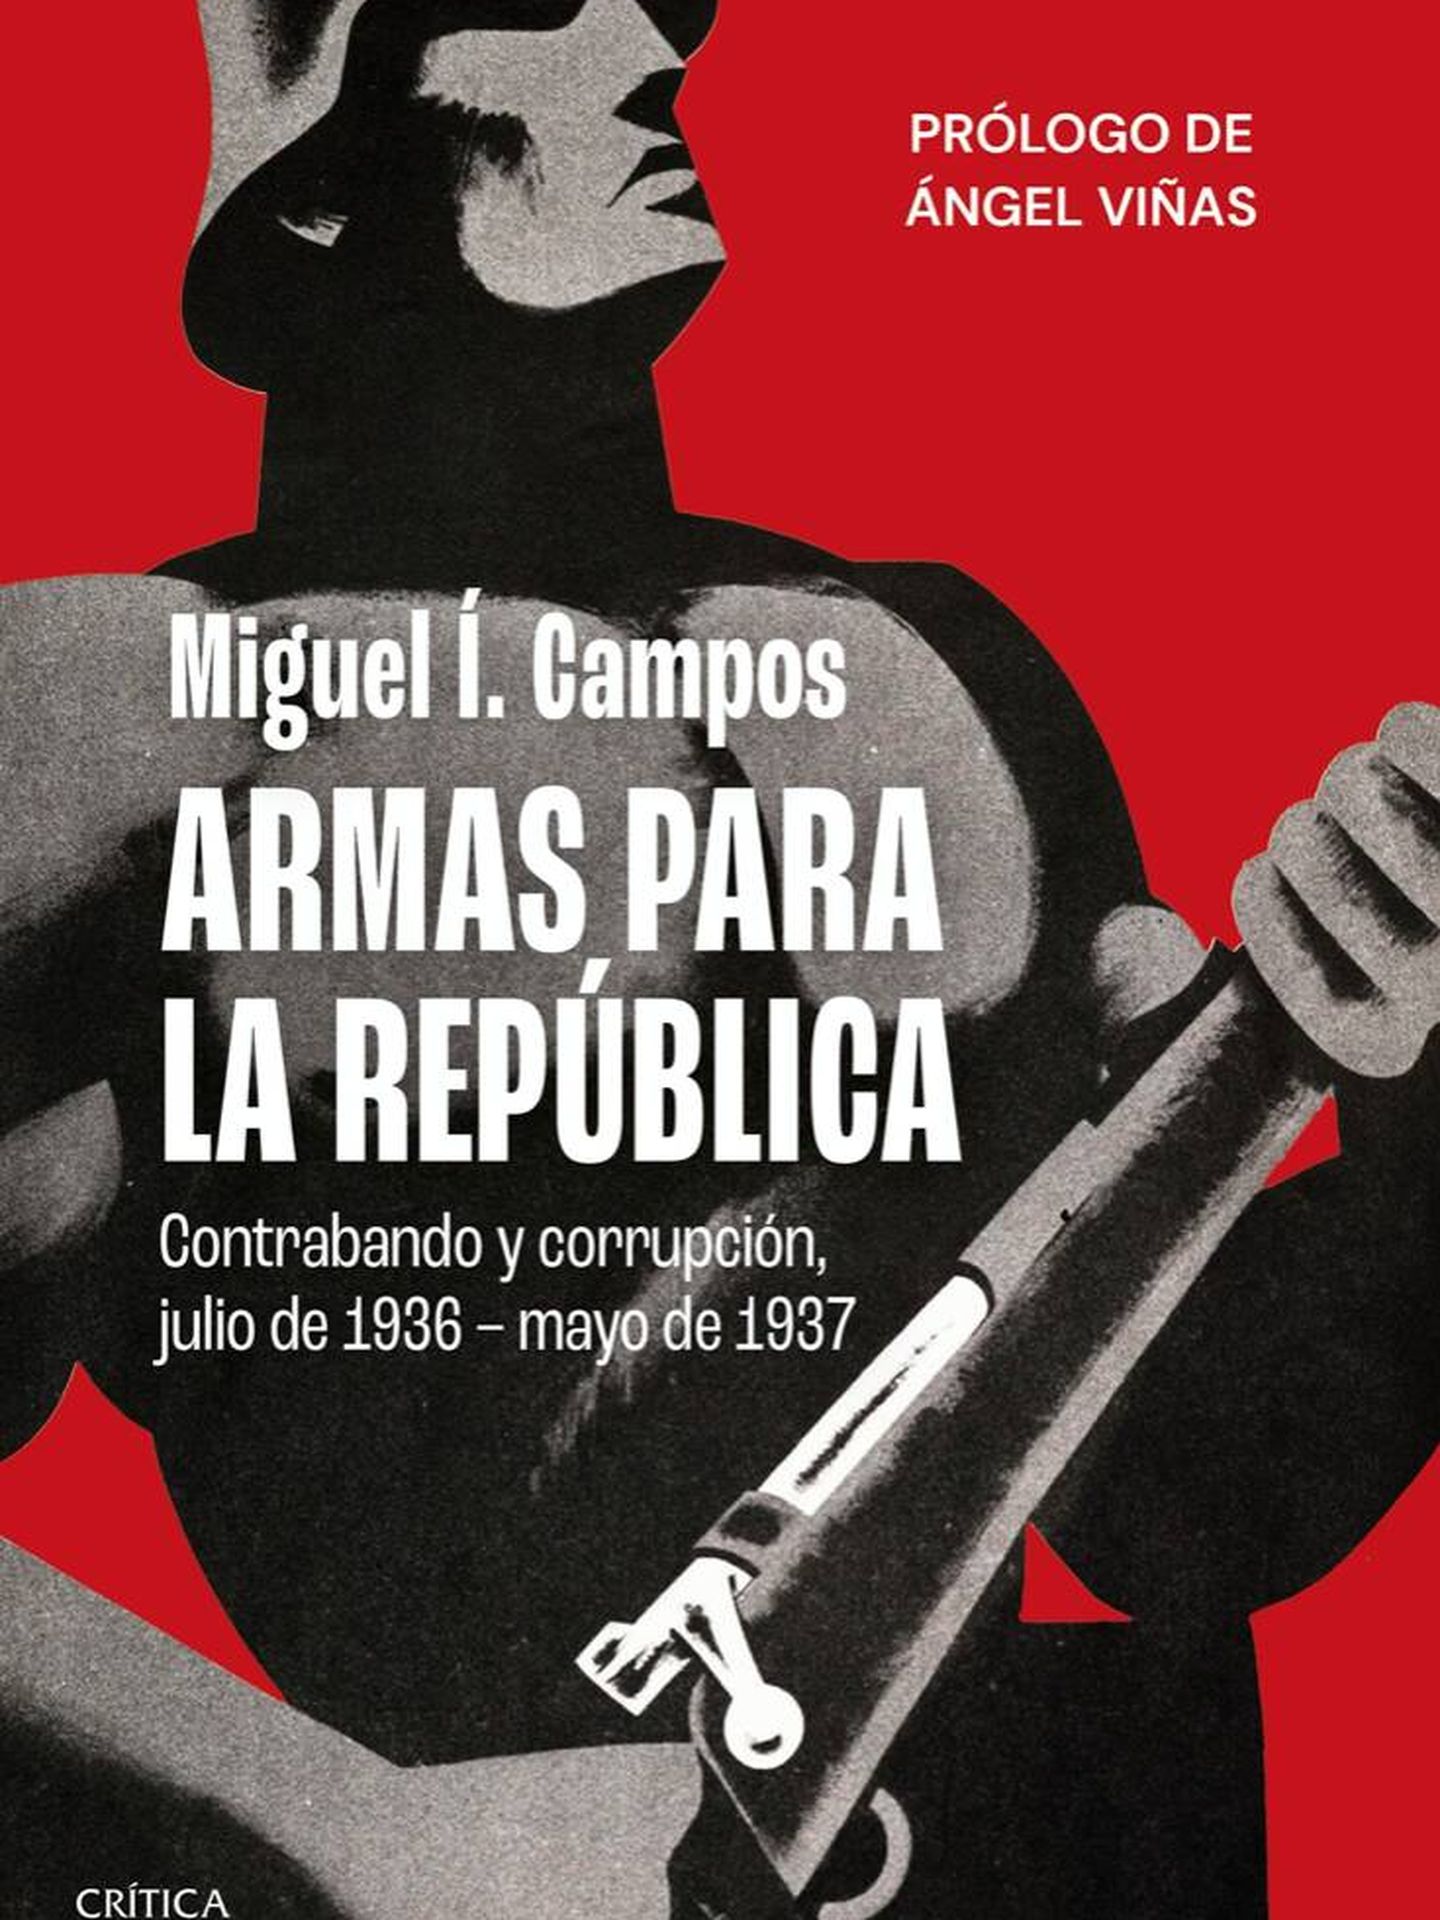 'Armas para la República. Contrabando y corrupción, julio de 1936-mayo de 1937'.